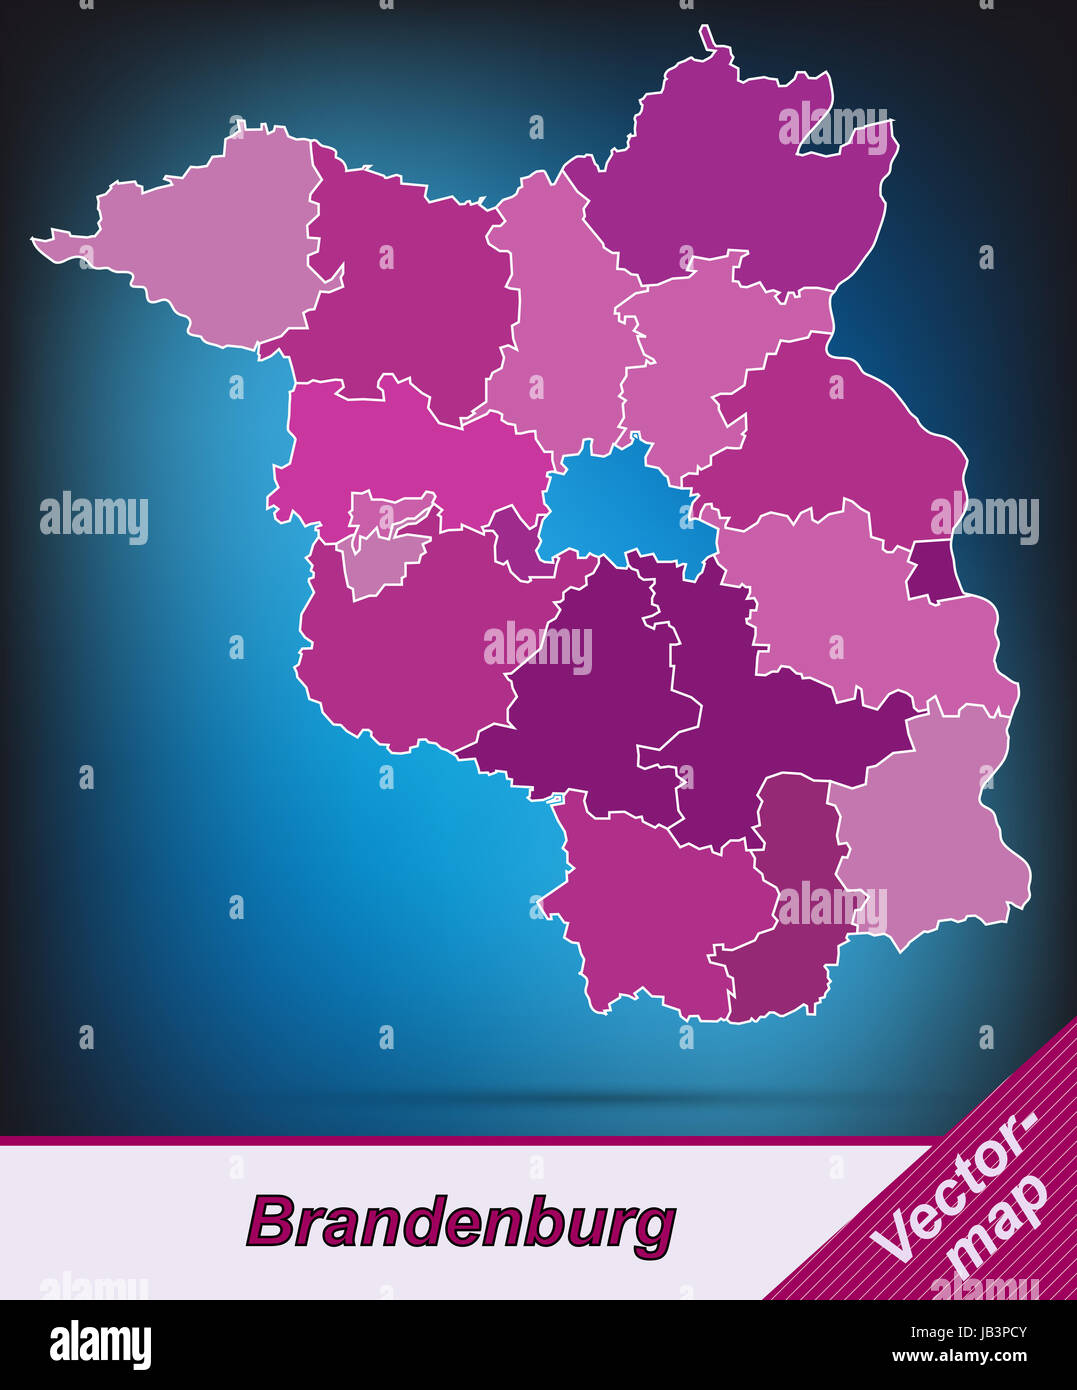 Brandeburgo in Deutschland als Grenzkarte mit Grenzen in Violett. Durch die ansprechende Gestaltung fügt sich die Karte perfekt in Ihr Vorhaben ein. Foto Stock